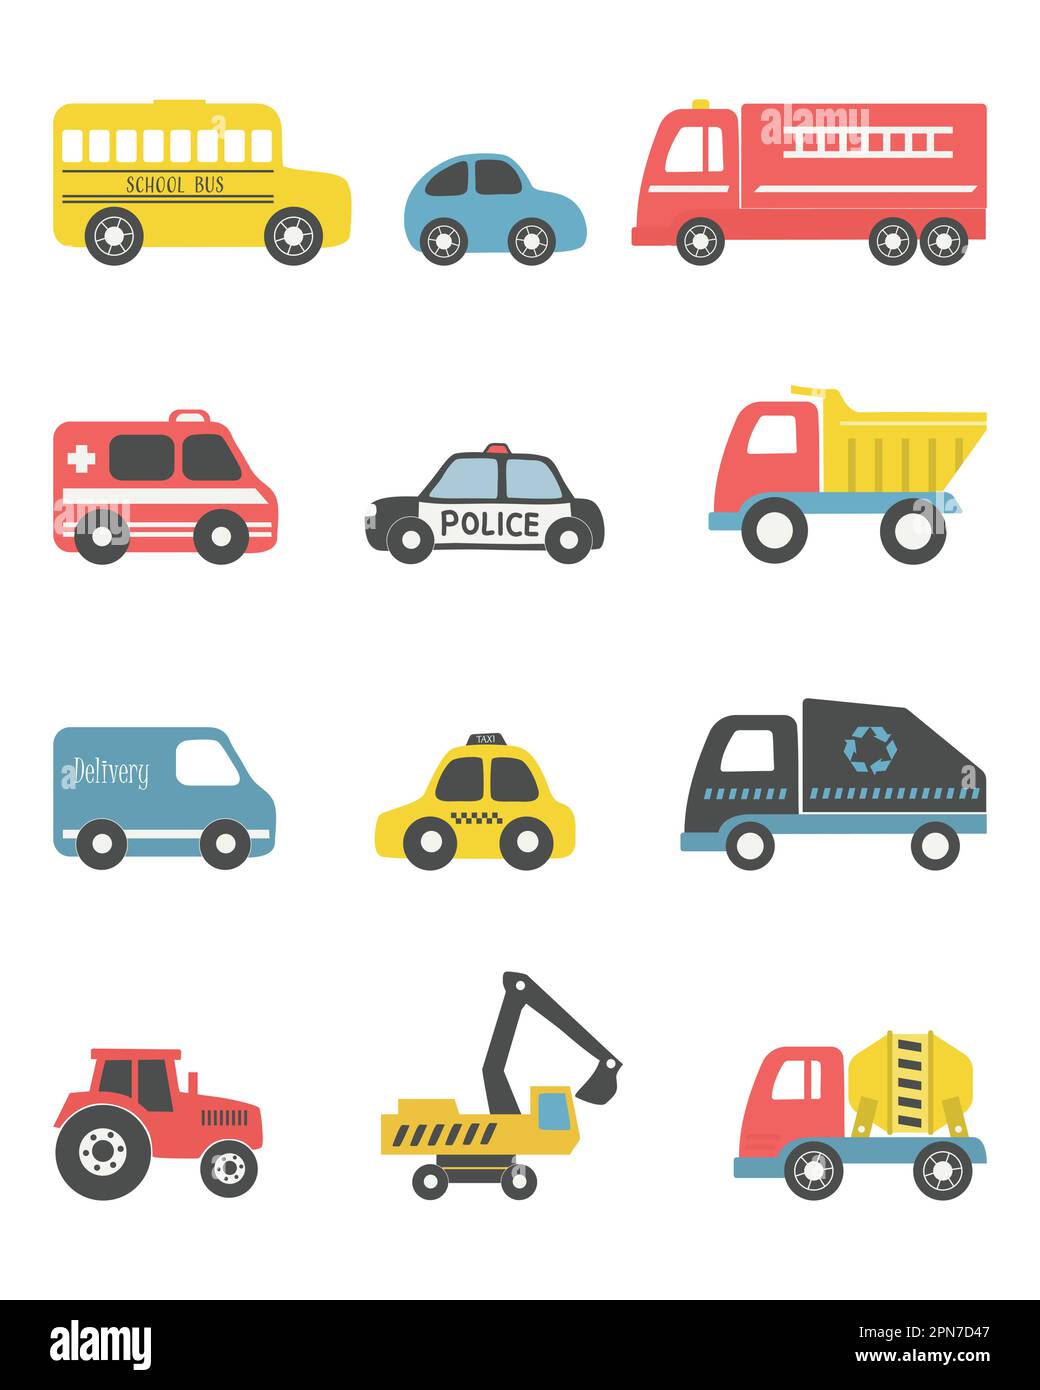 Spielzeug isoliert auf weißem Hintergrund. Es gibt verschiedene Spielzeugautos: Feuerwehrwagen, Lkw, Polizeiwagen, Taxi, Bus, Bagger, Betonmischer, Trac Stock Vektor